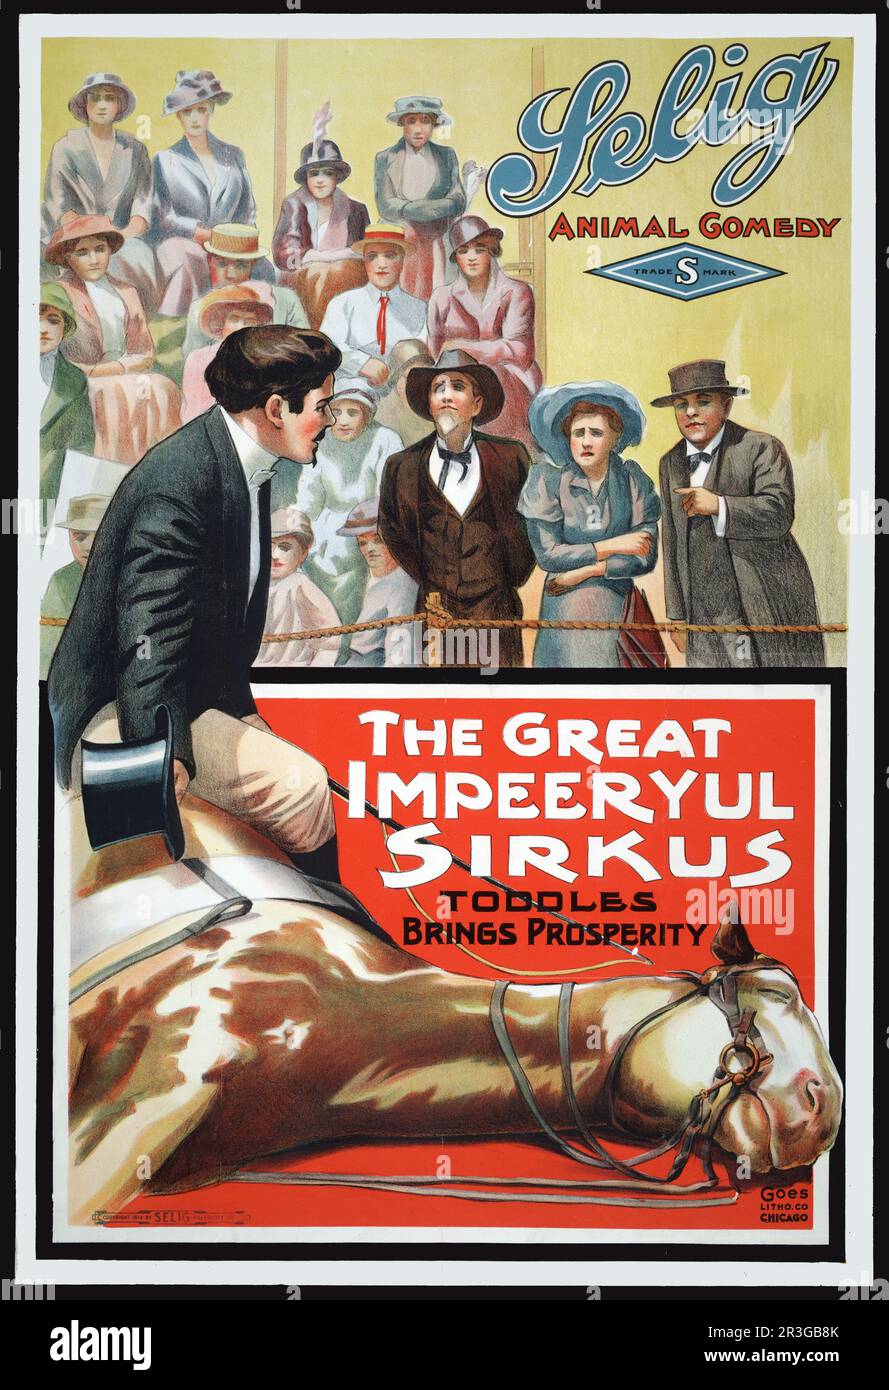 Affiche de cinéma pour la Grande Impeeryul Sirkus, montrant un maître de sonnerie assis sur un cheval avec des spectateurs regardant. Banque D'Images